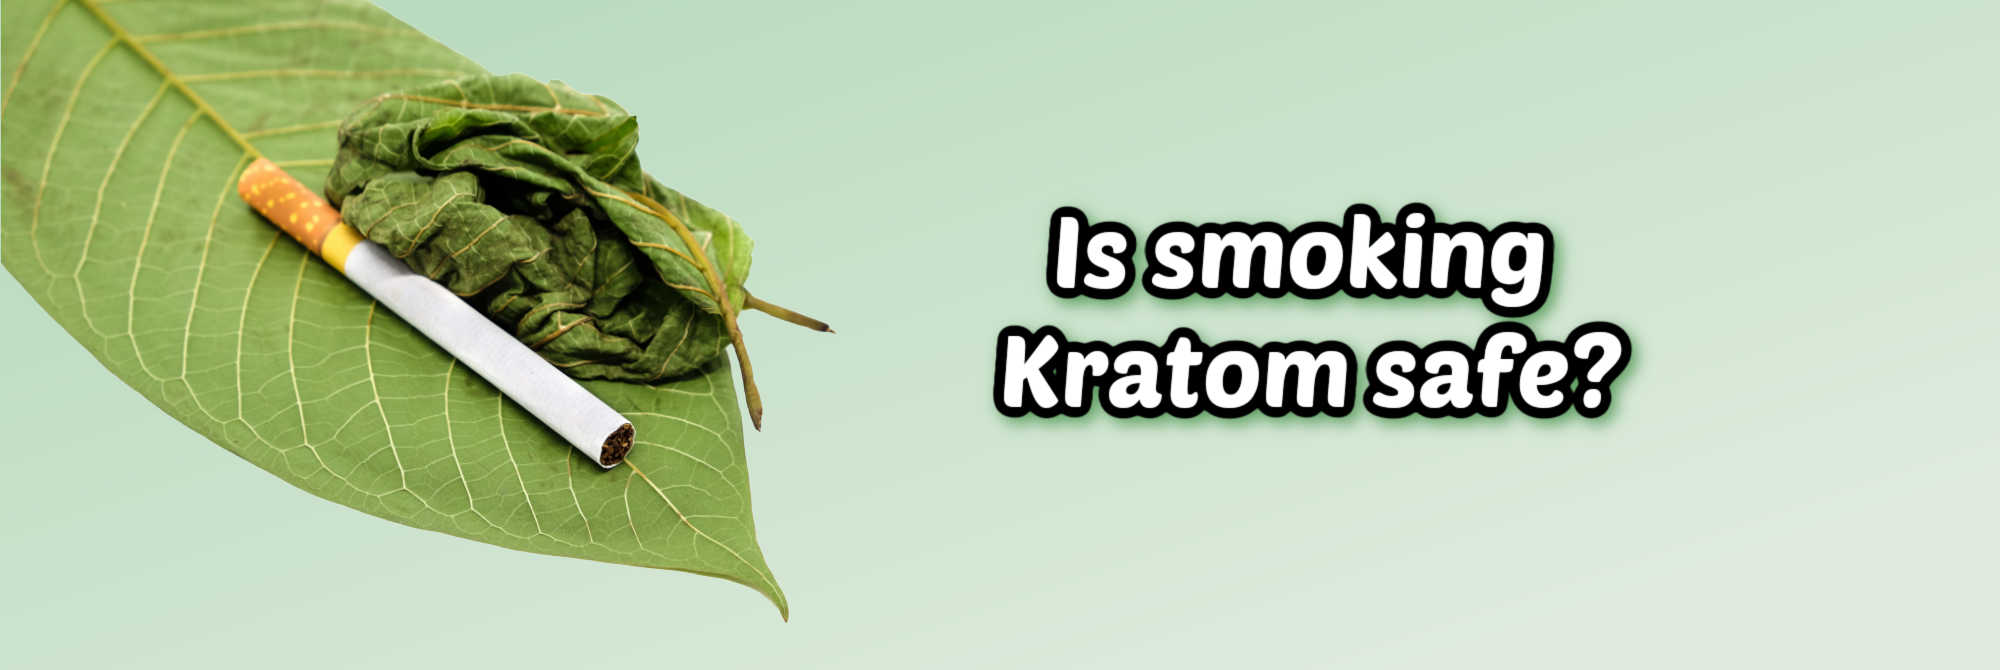 image of is smoking kratom safe